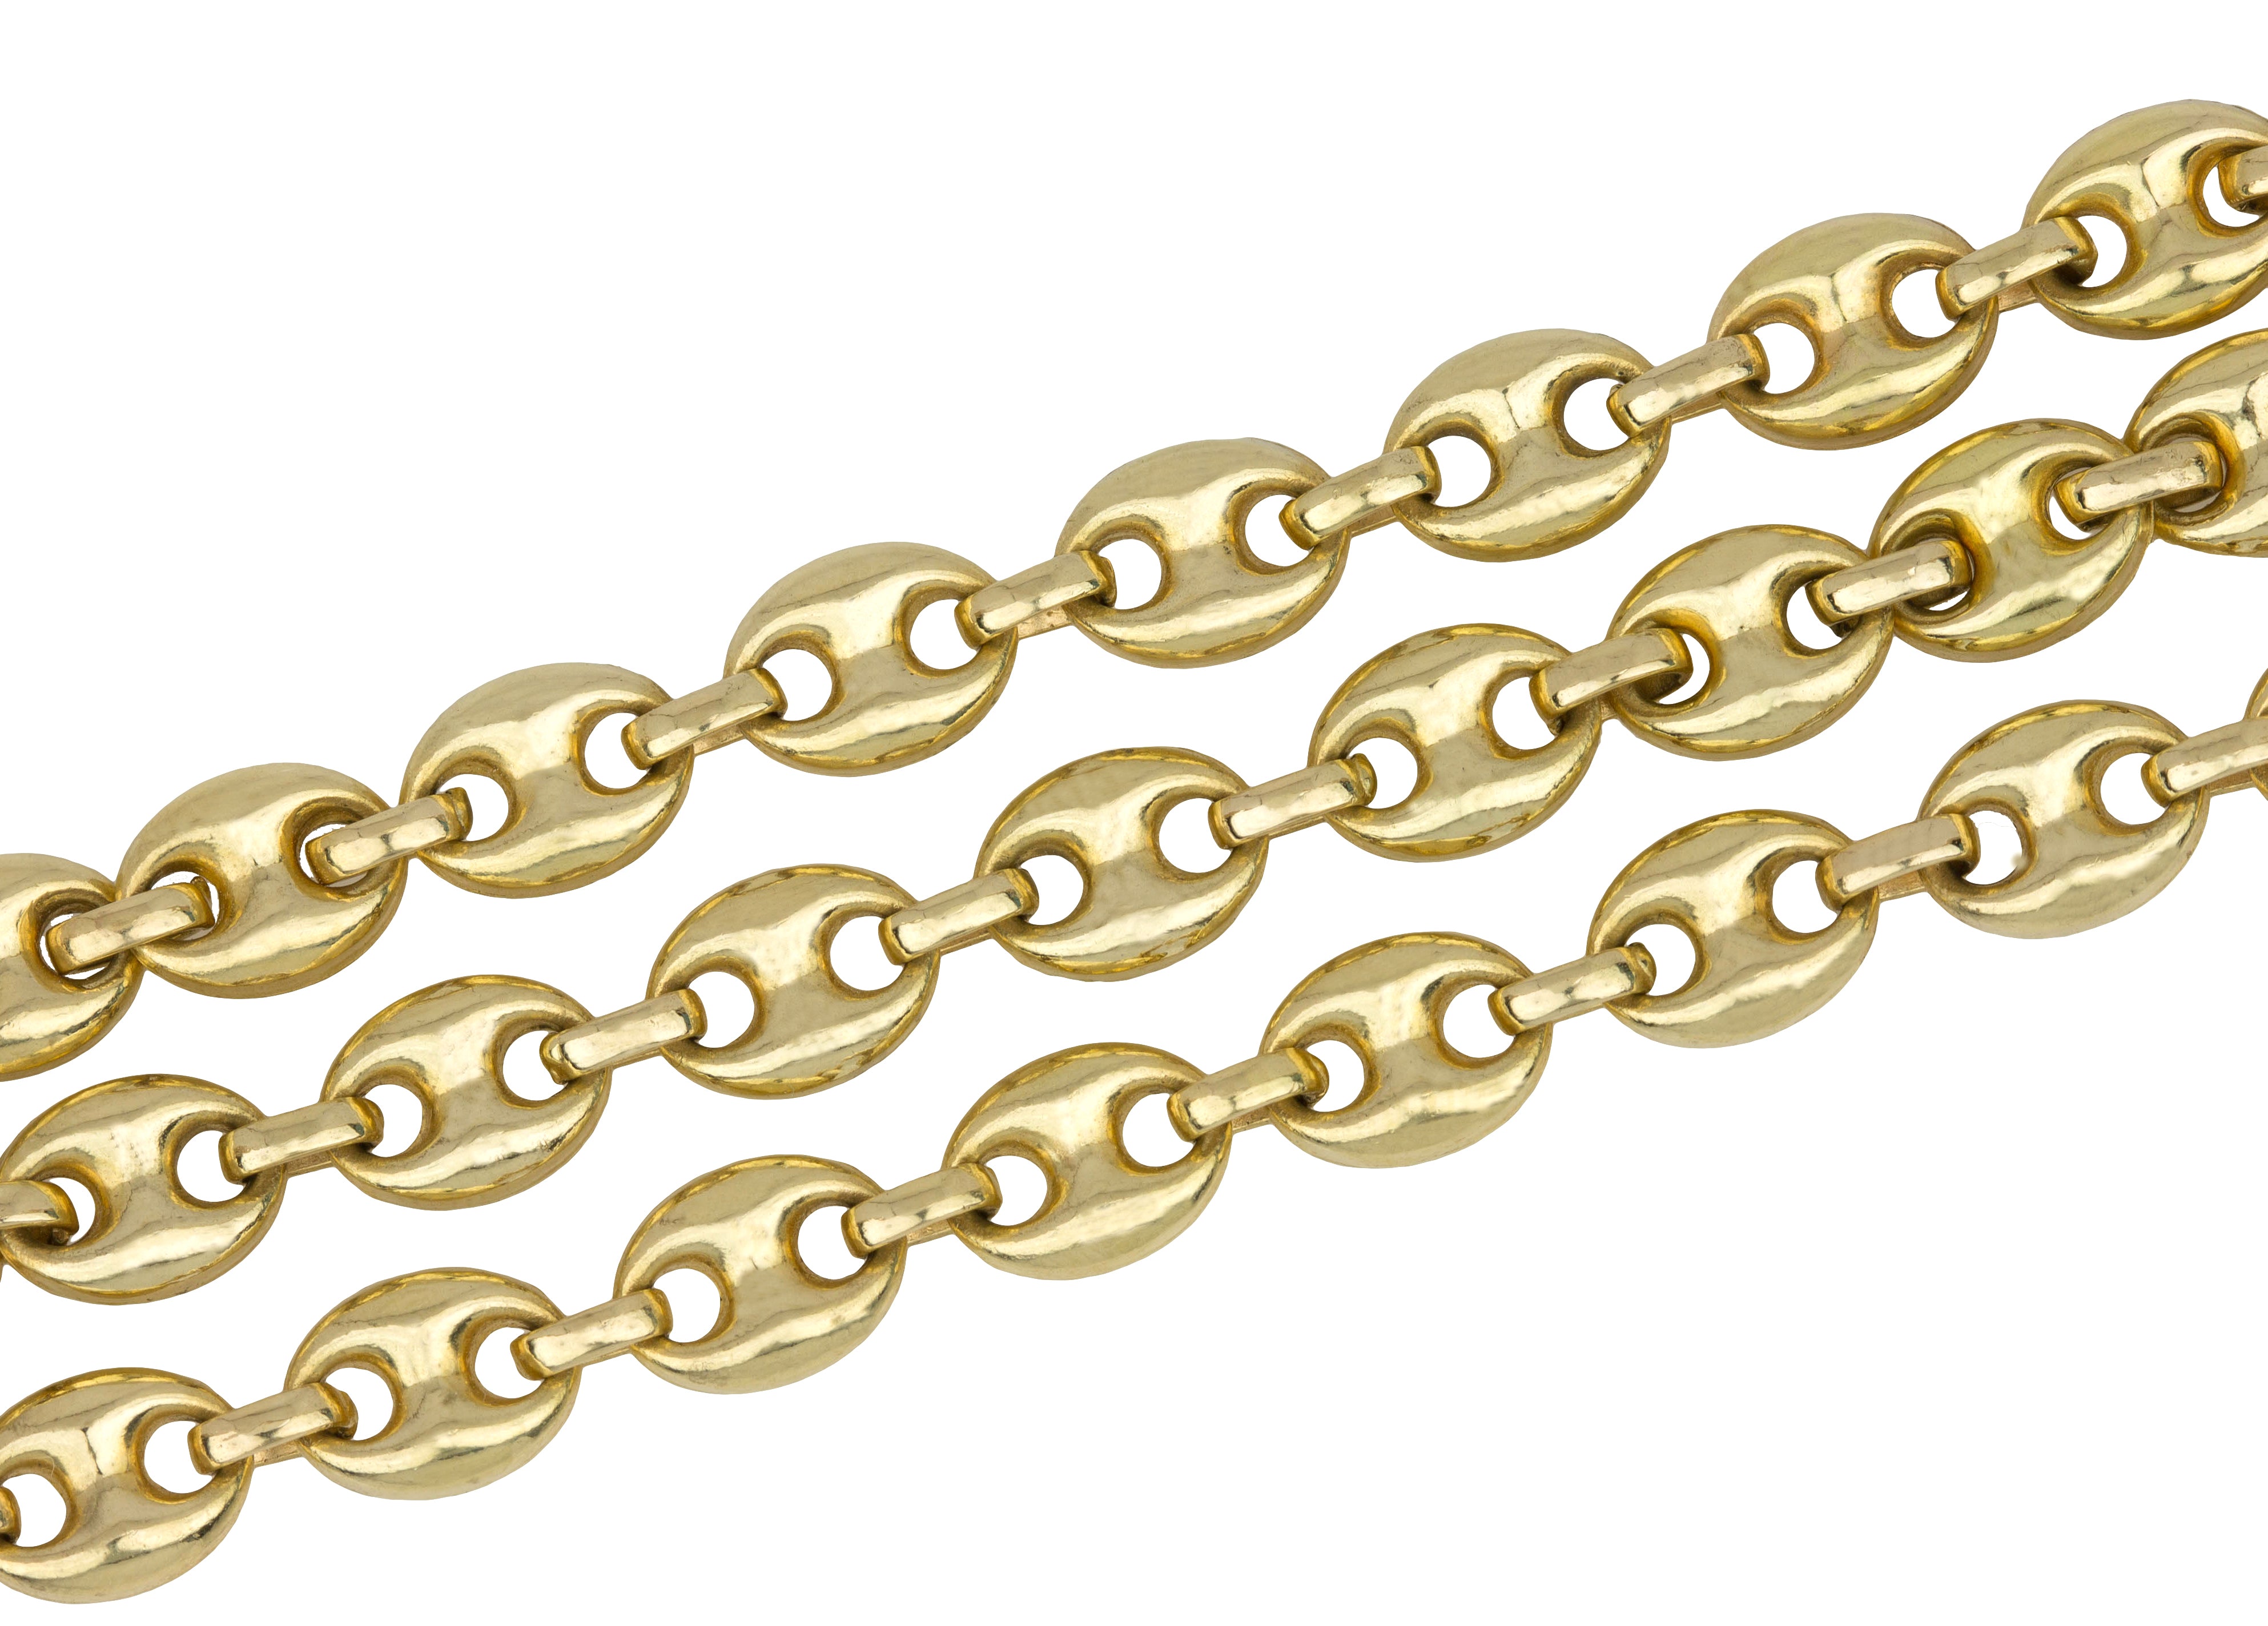 gucci link chain cheap